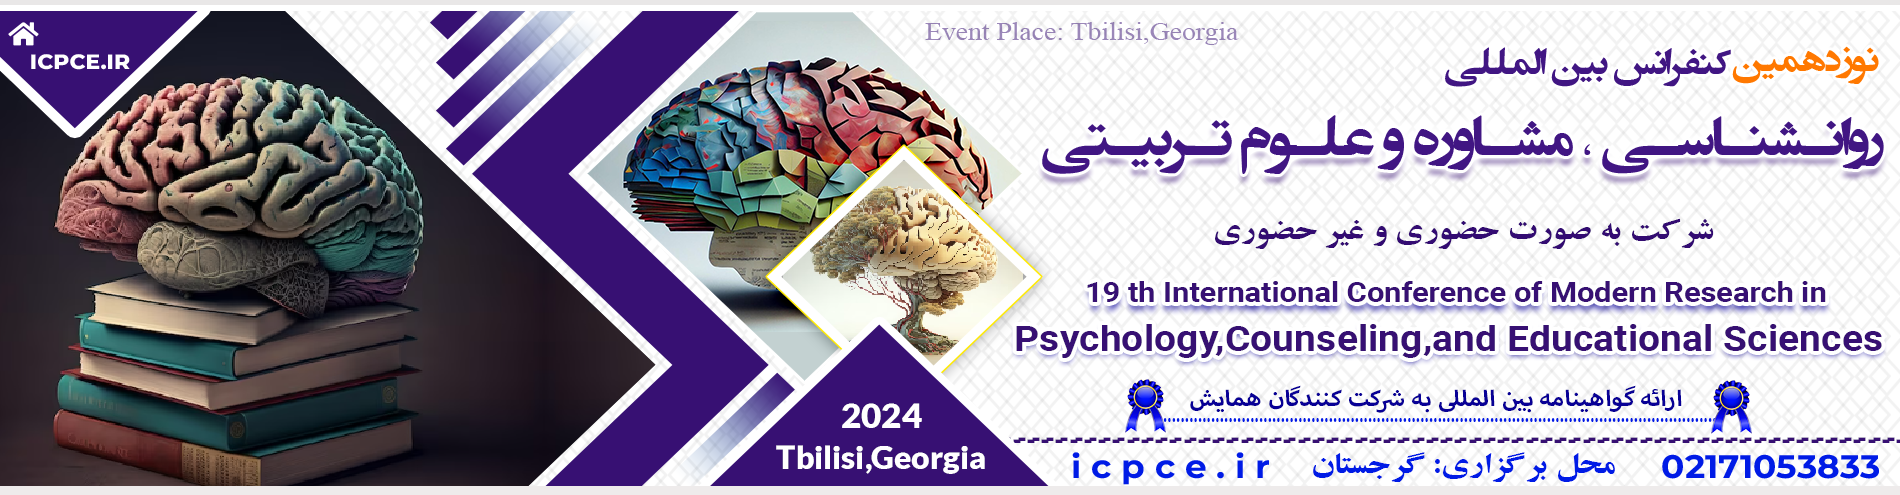 کنفرانس بین المللی روانشناسی ، مشاوره و علوم تربیتی